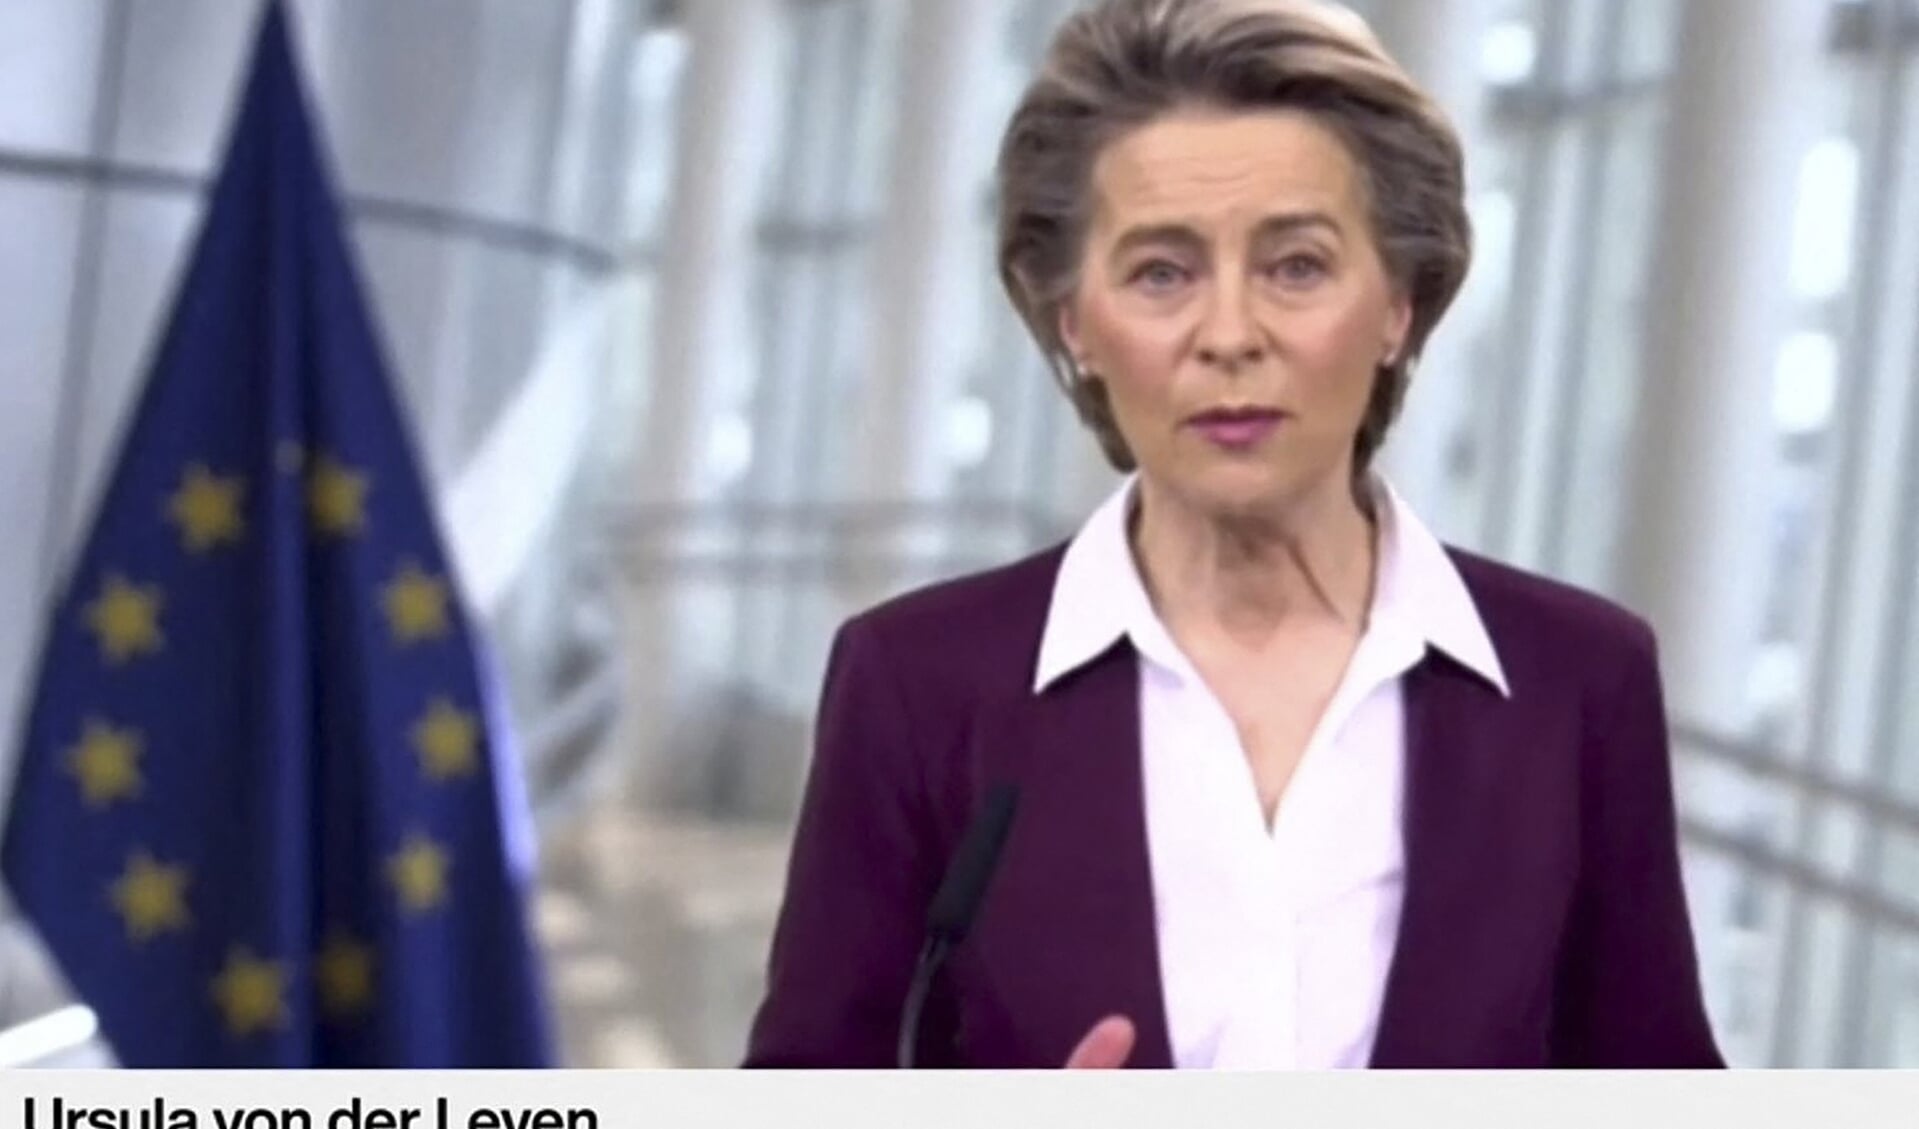 De kans dat het Europees Parlement Ursula von der Leyen wegstuurt is nihil. Daarvoor heeft ze nog genoeg krediet bij de grote fracties van de christendemocraten (haar partij), sociaaldemocraten, liberalen en Groenen.